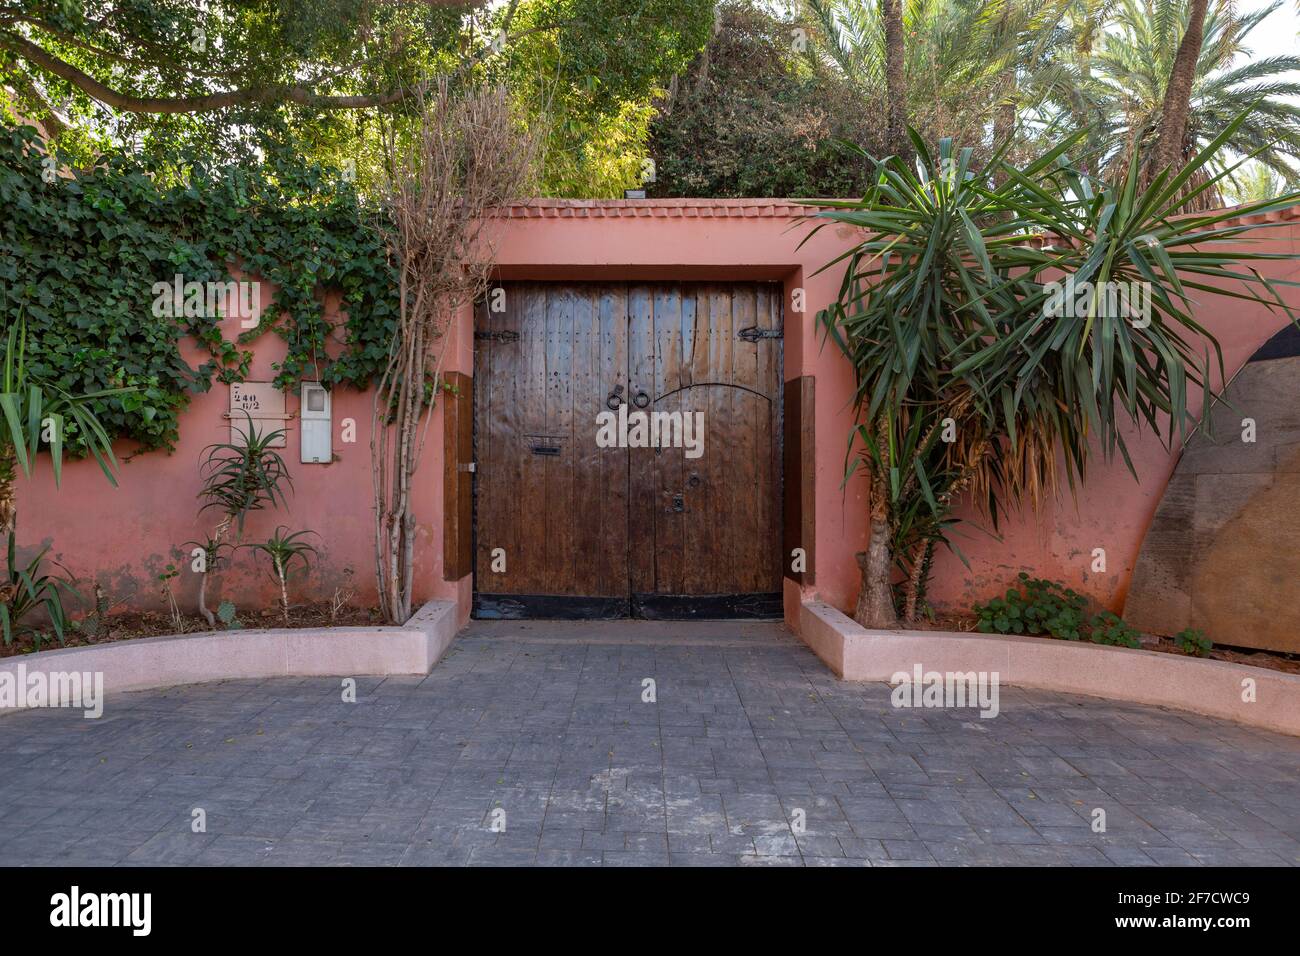 Porte en bois dans un mur peint rougeâtre avec une large porte à l'avant et un immense jardin derrière dans la belle ville de Marrakech, au Maroc Banque D'Images